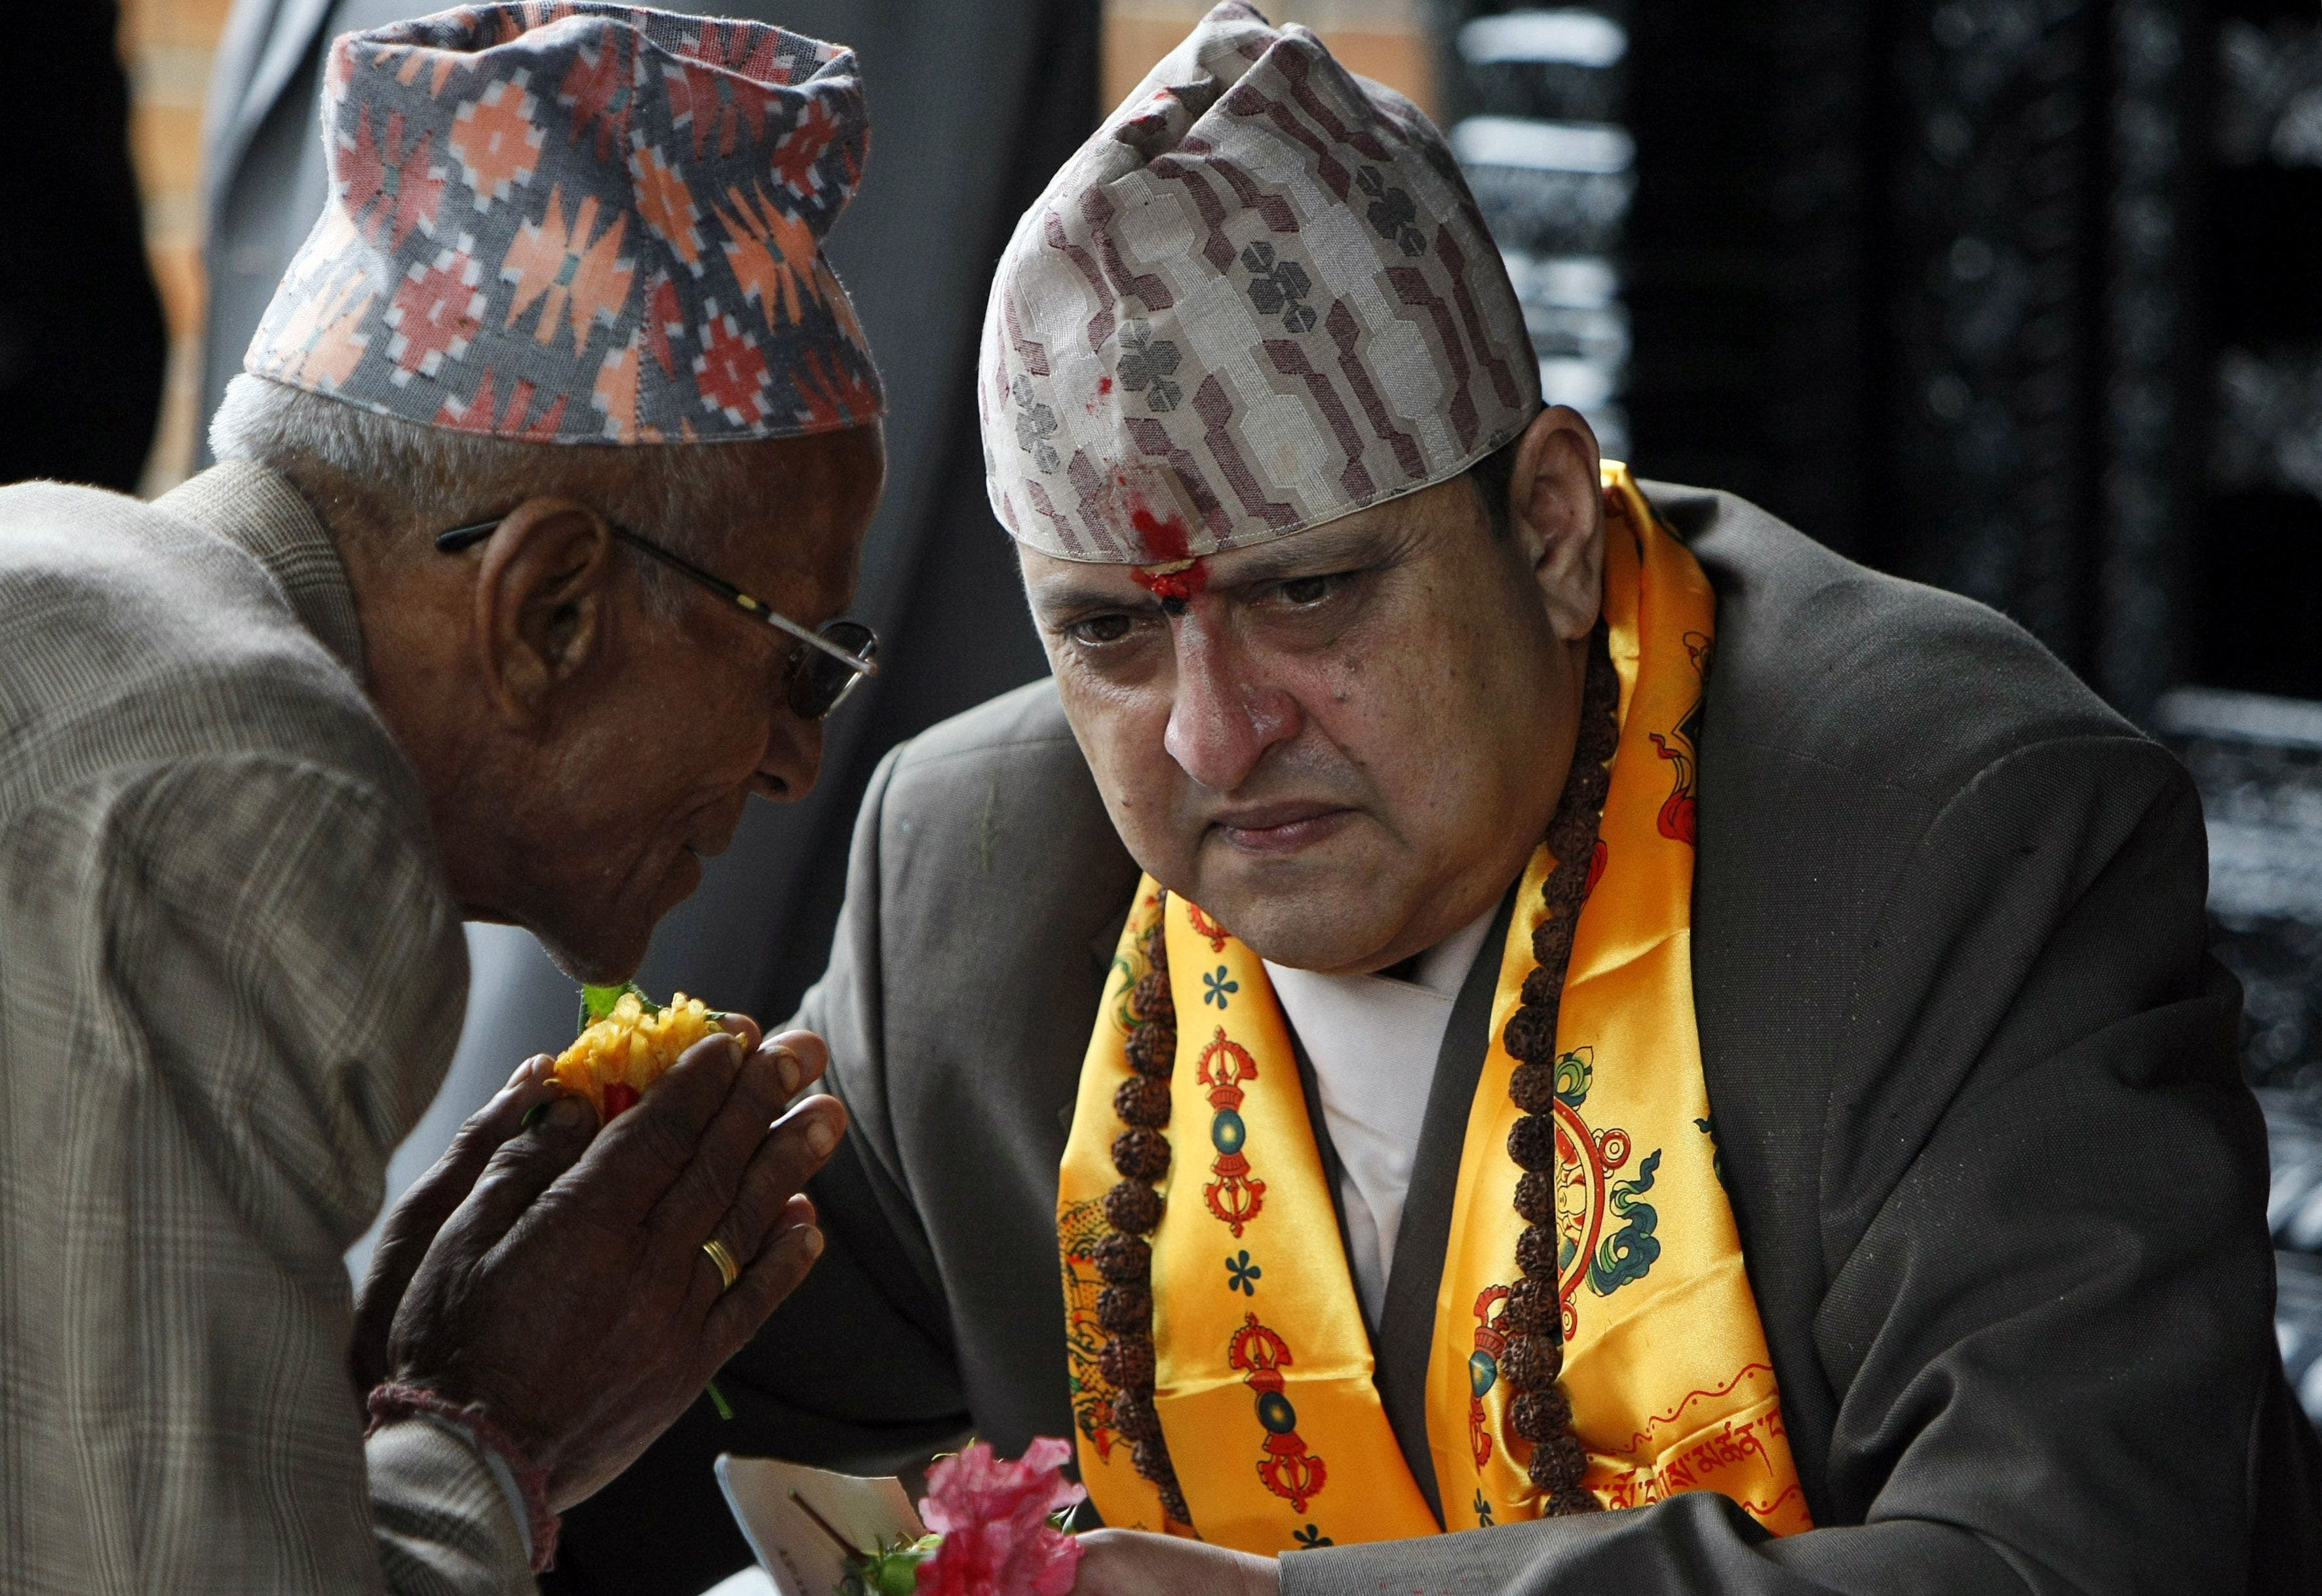 vor 16 jahren hat nepal die monarchie abgeschafft. jetzt fordern demonstranten eine rückkehr des königs – warum?